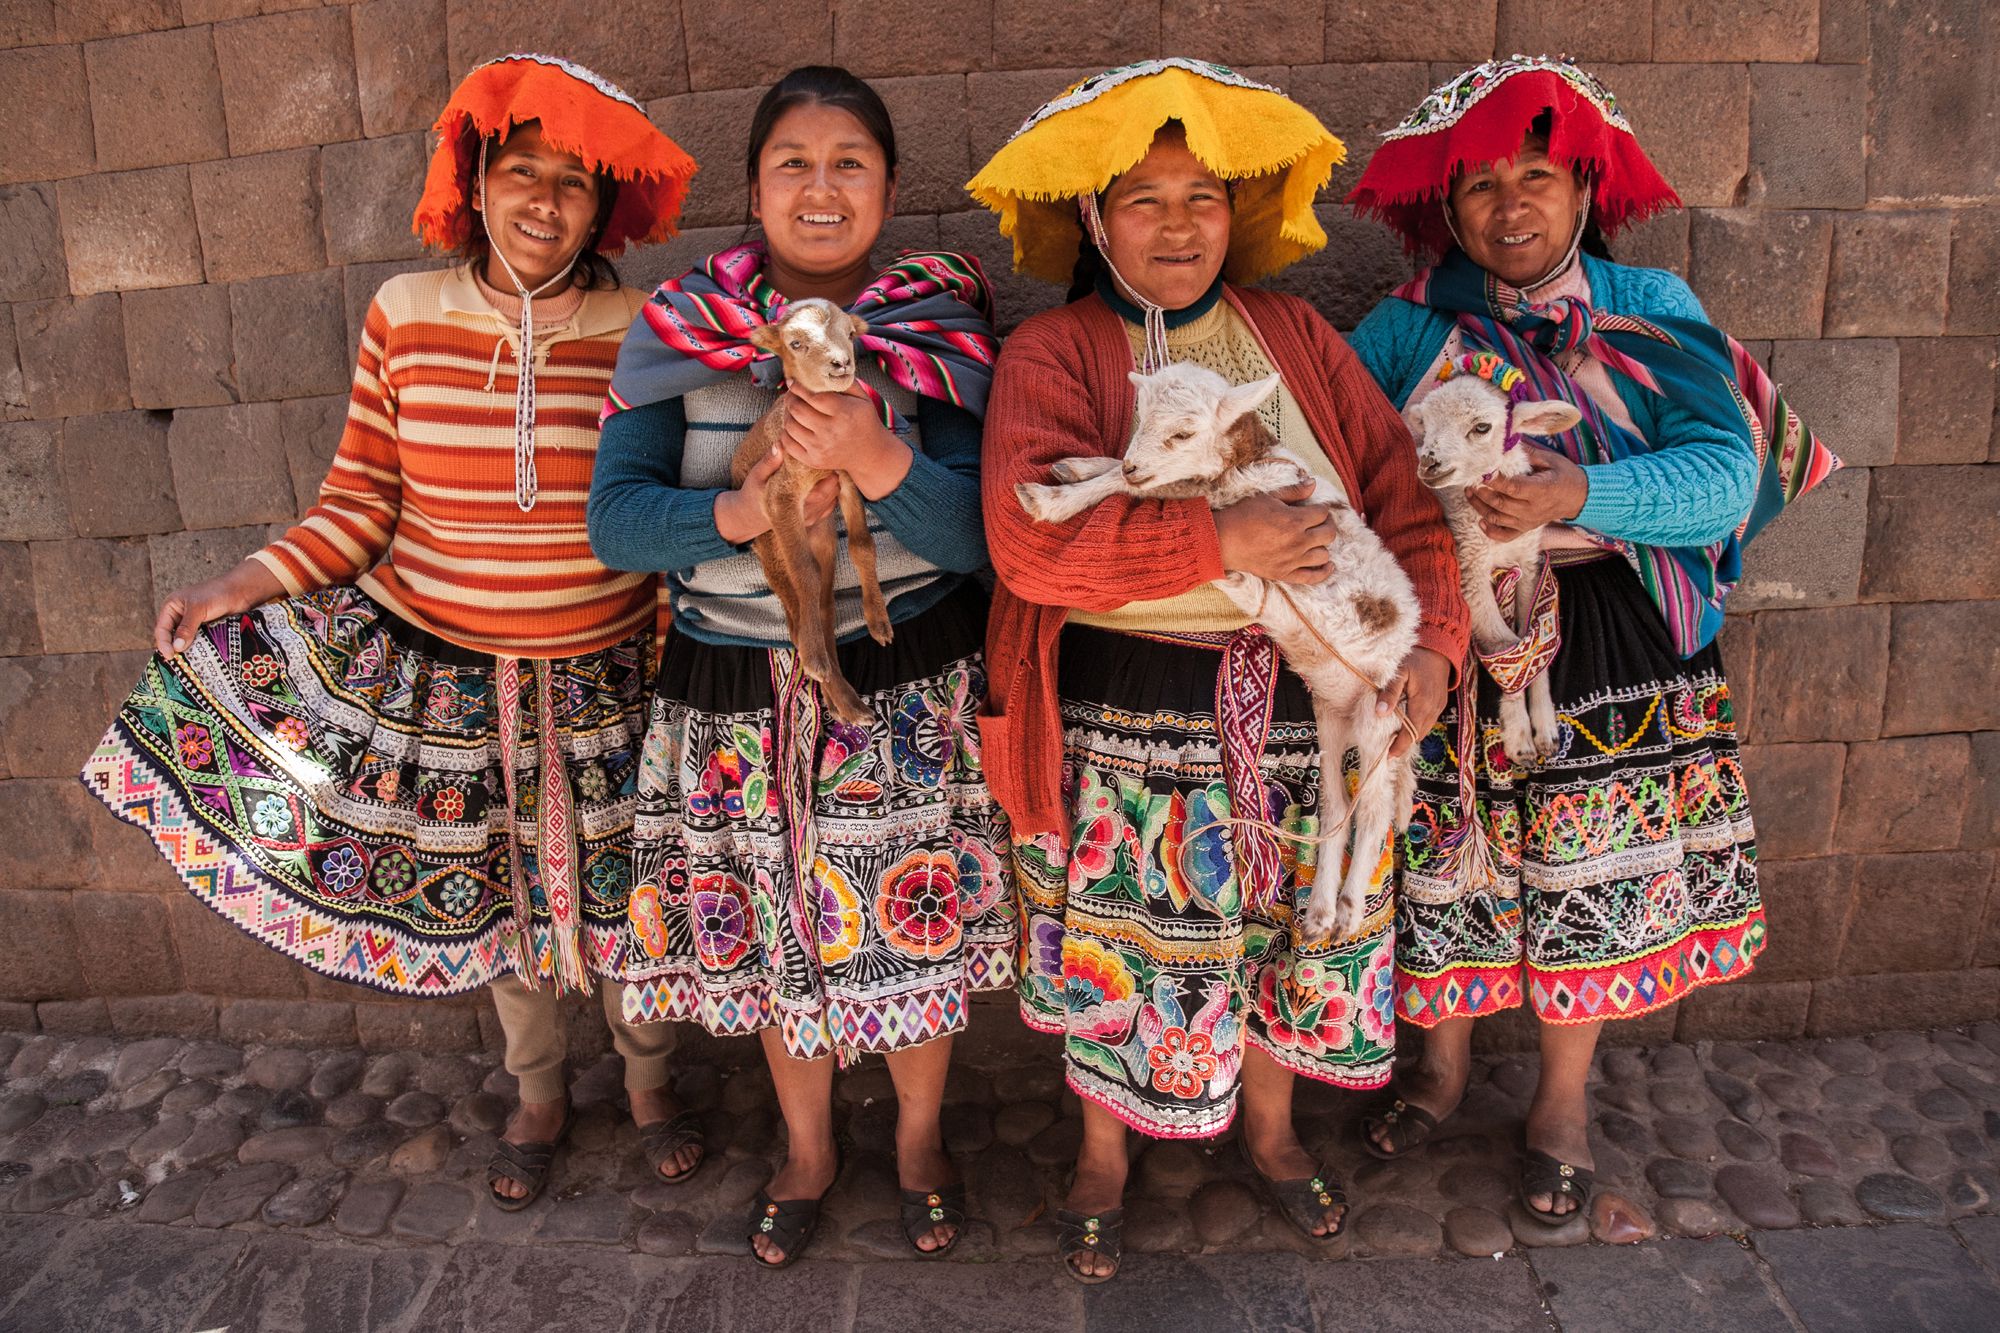 Национальная одежда страны. Индейцы кечуа в Перу. Индейцы аймара. Индейцы кечуа в Эквадоре. Индейцы кечуа и аймара.